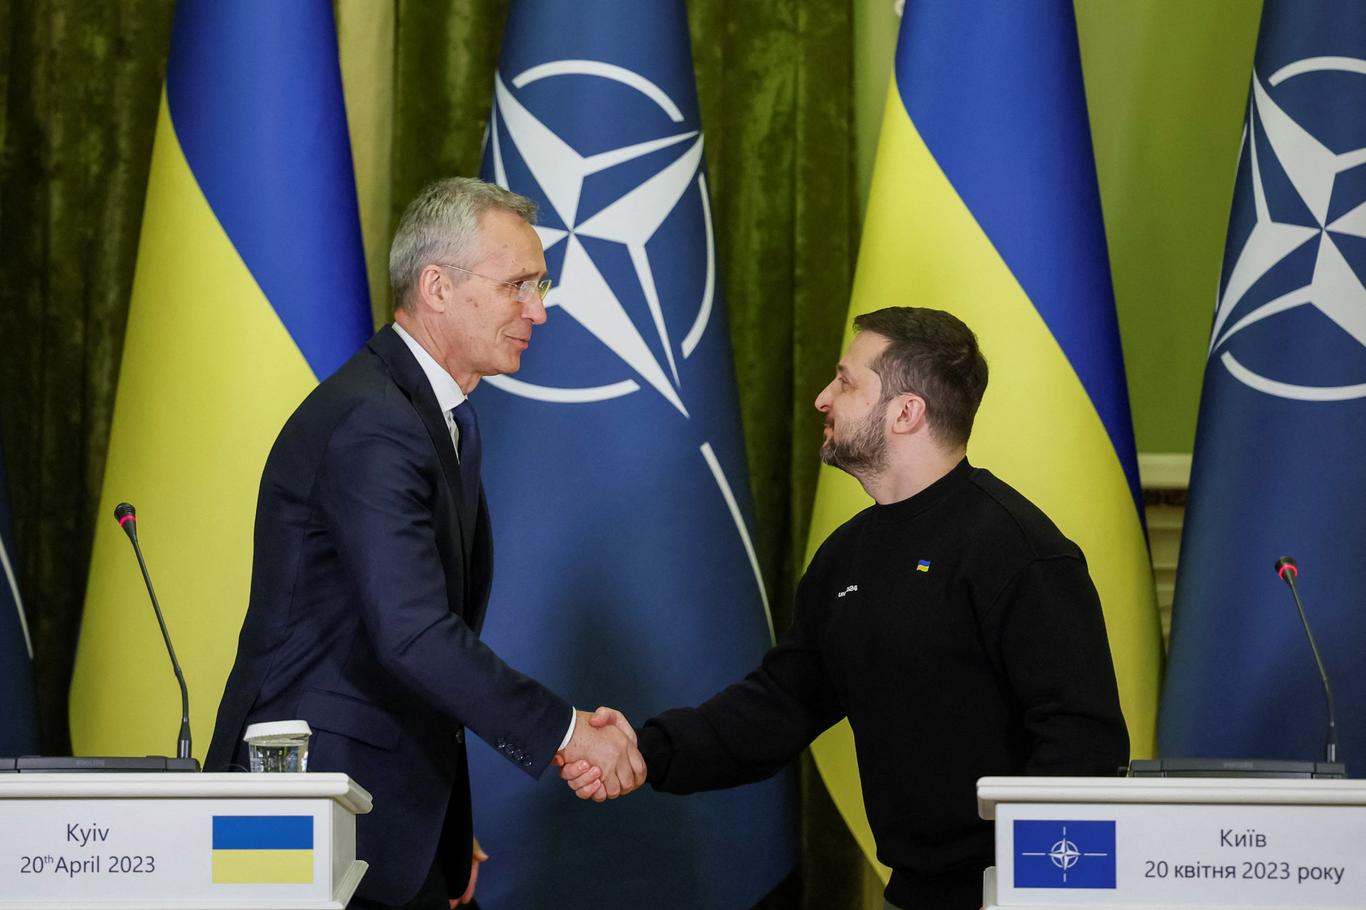 «Україна має алгоритм співпраці щодо руху в Євросоюз. З НАТО цього ще немає» — Яхно